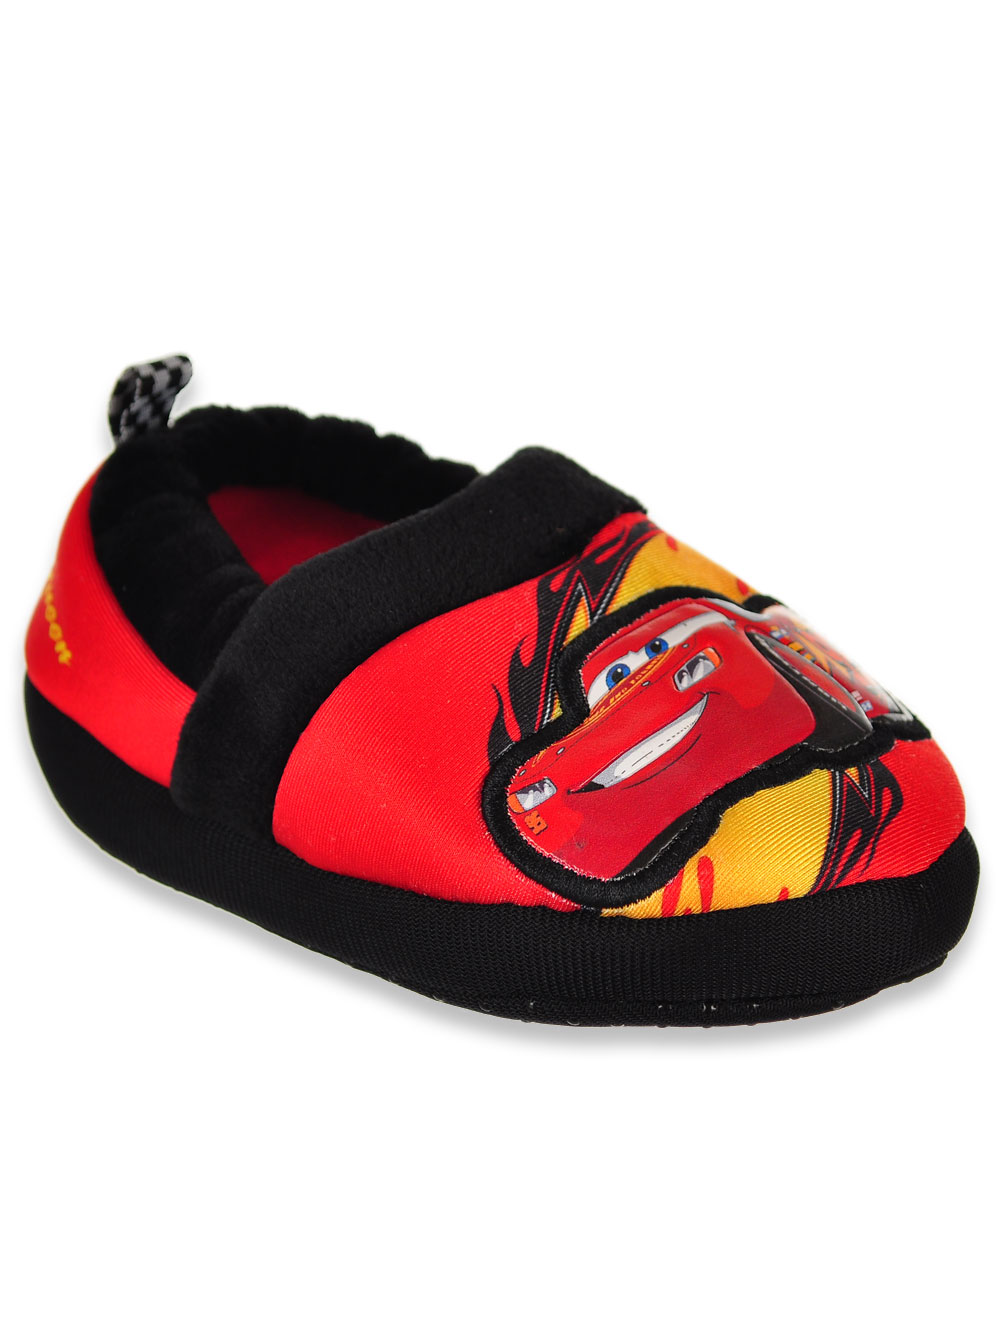 Disney Boys Slip On Comfy Loafer Slippers - image 4 of 4